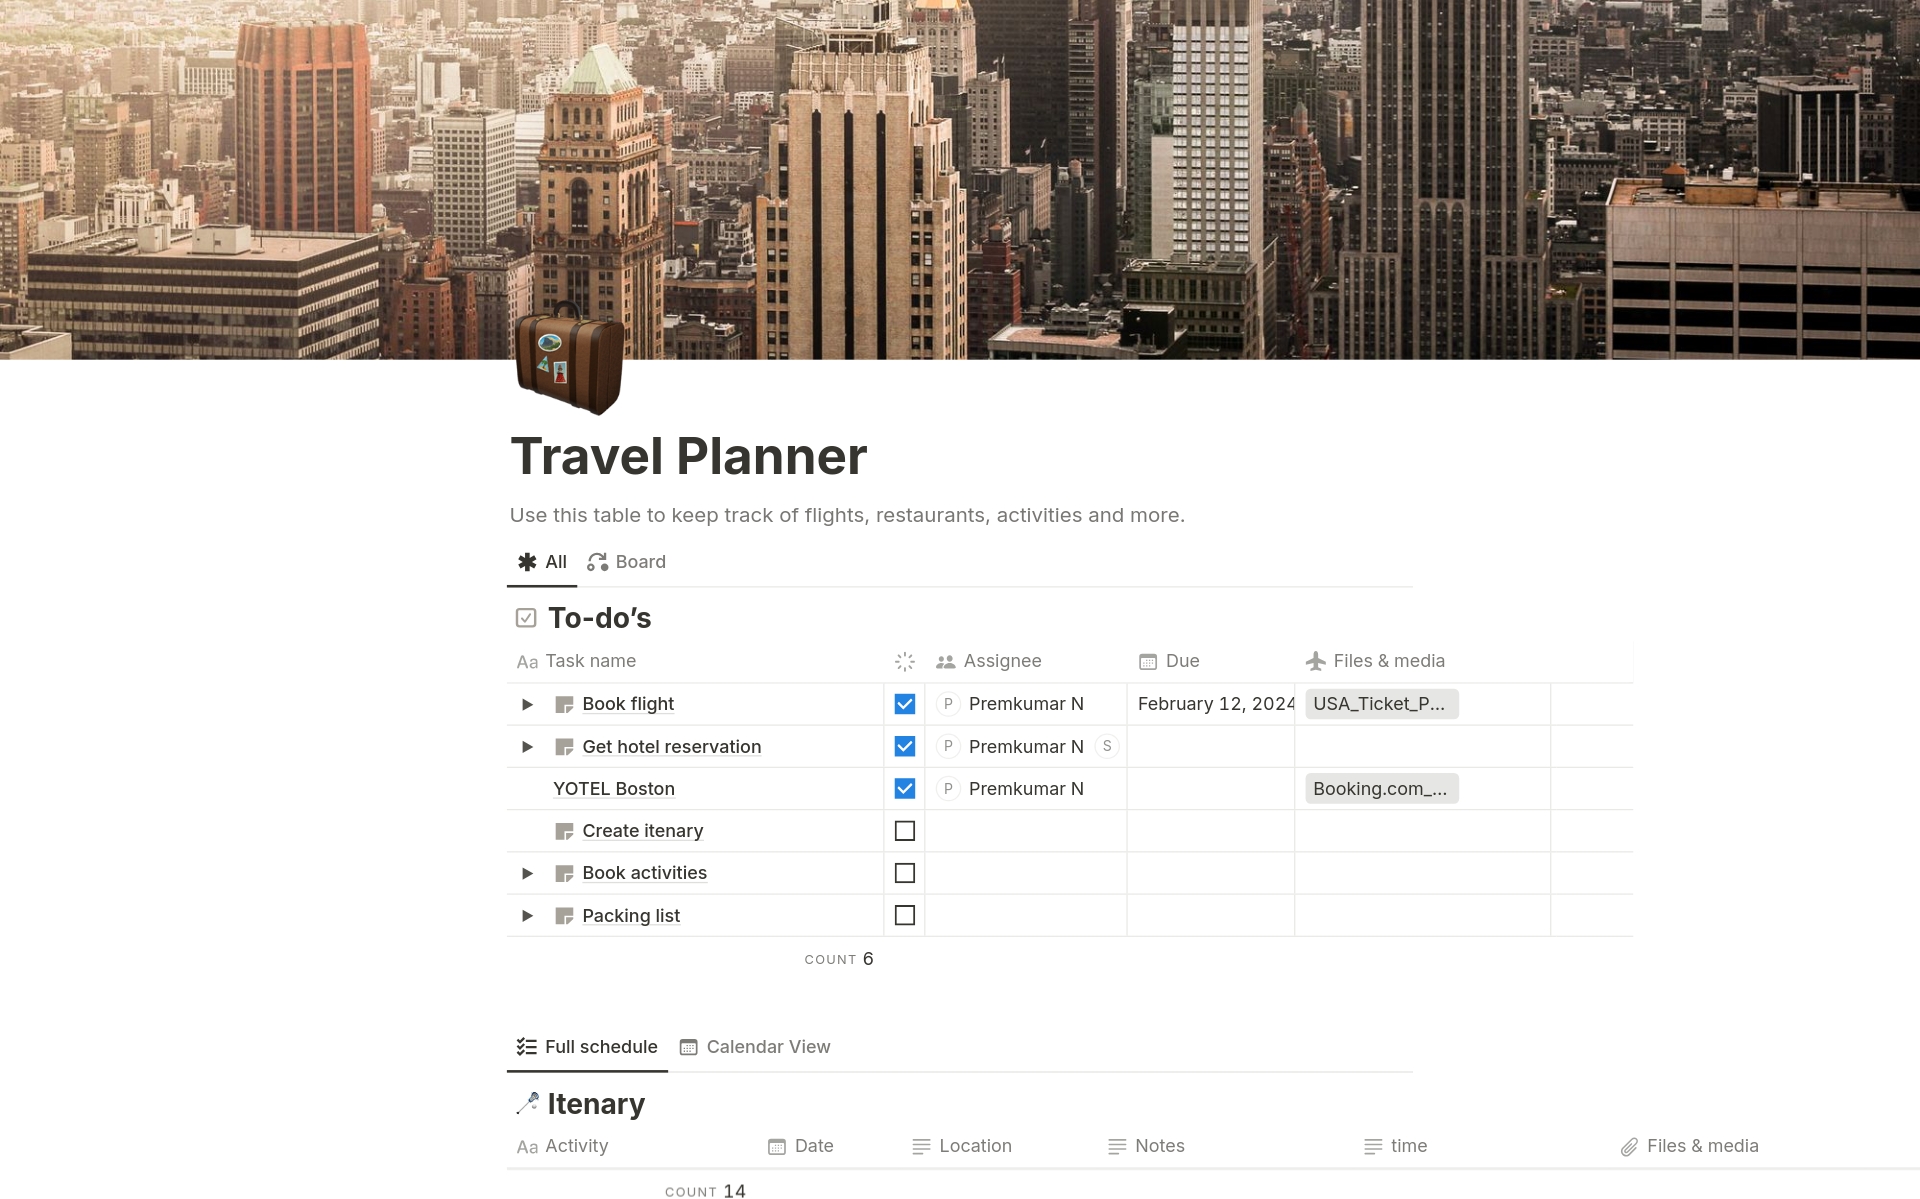 Vista previa de una plantilla para Travel Planner - USA